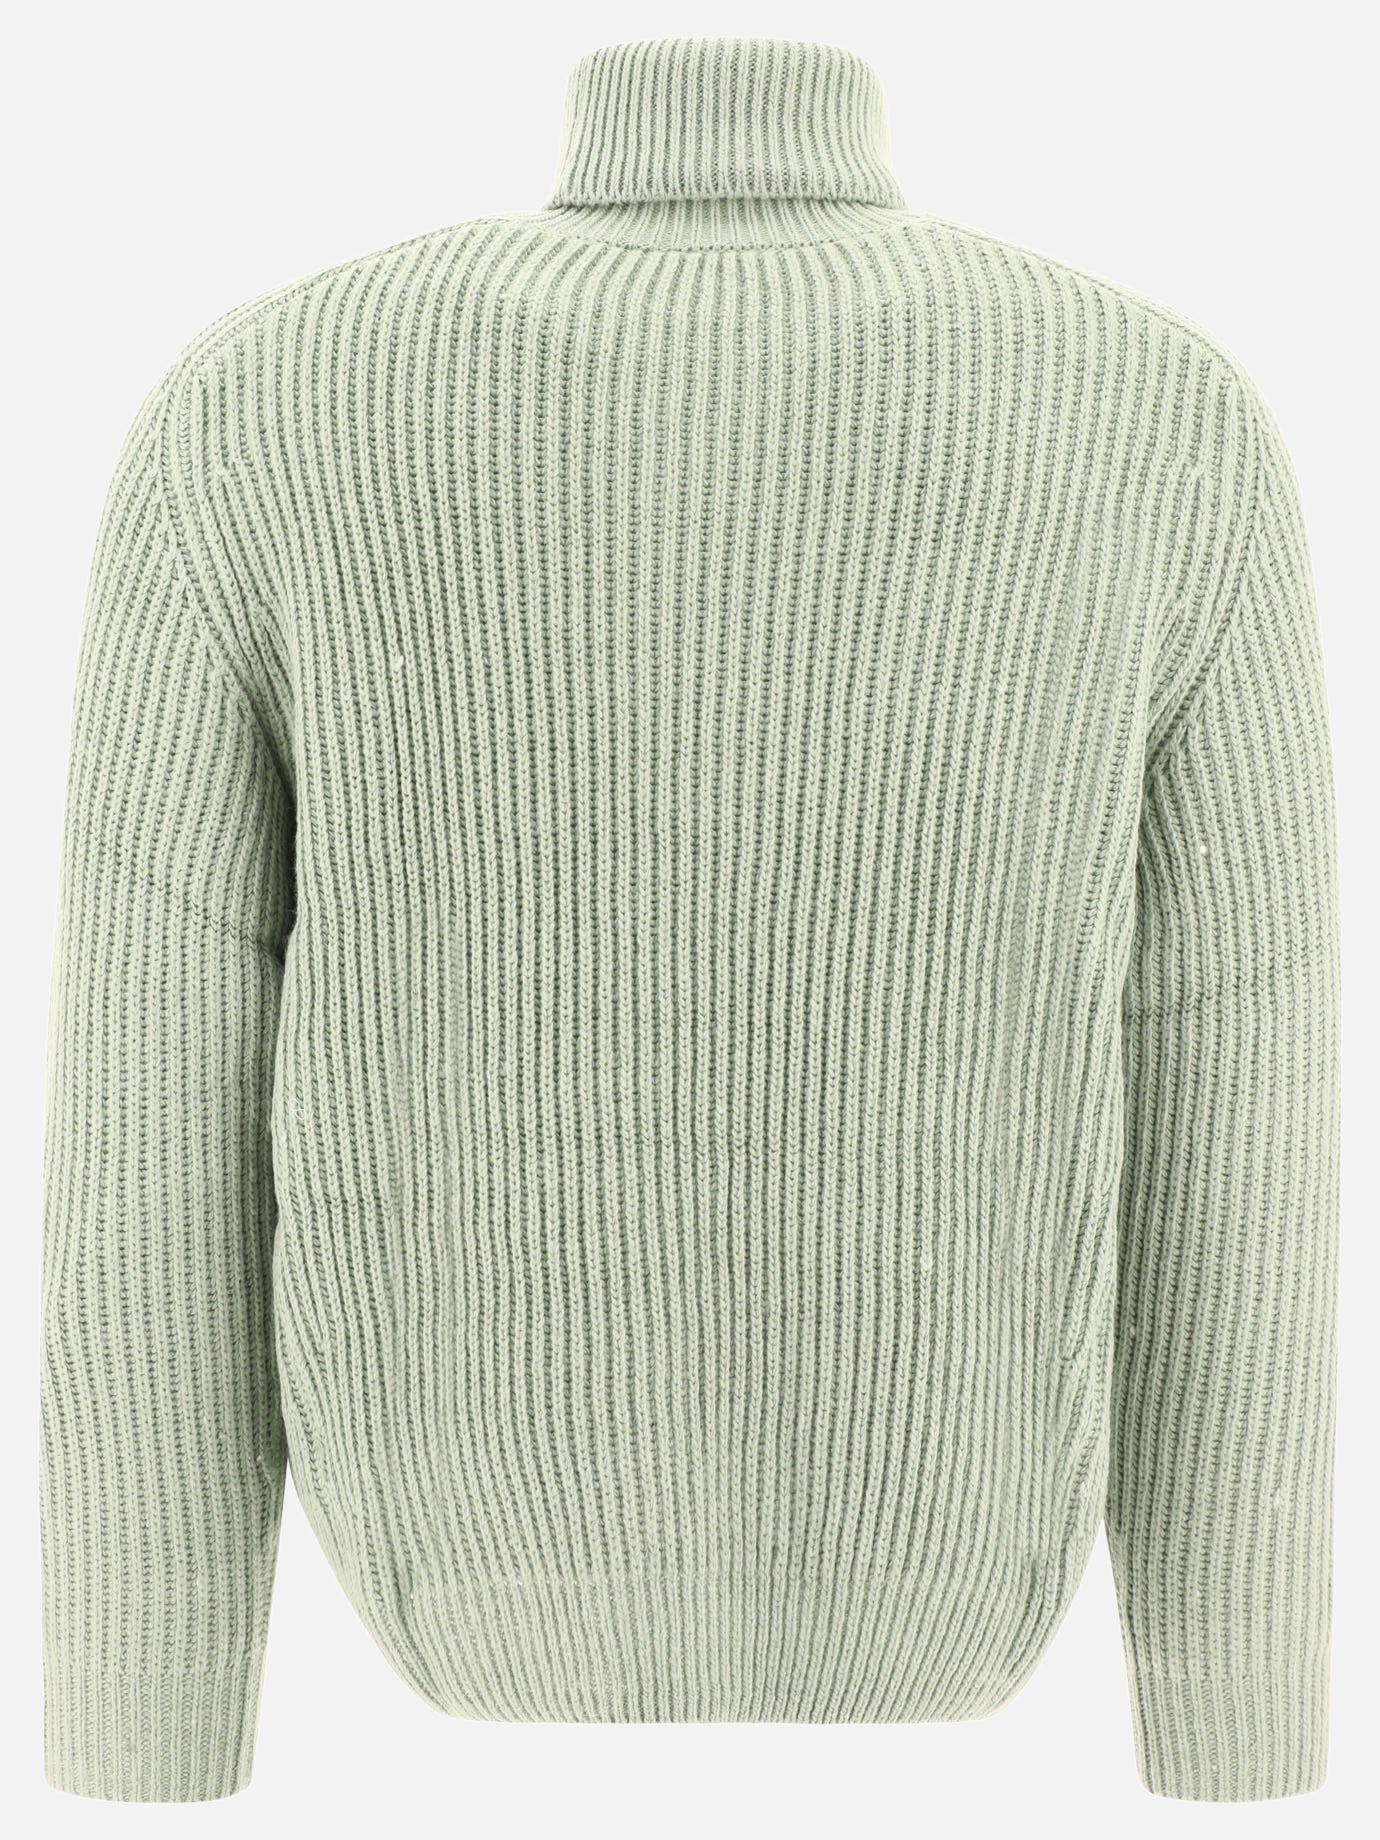 "W Mia" sweater